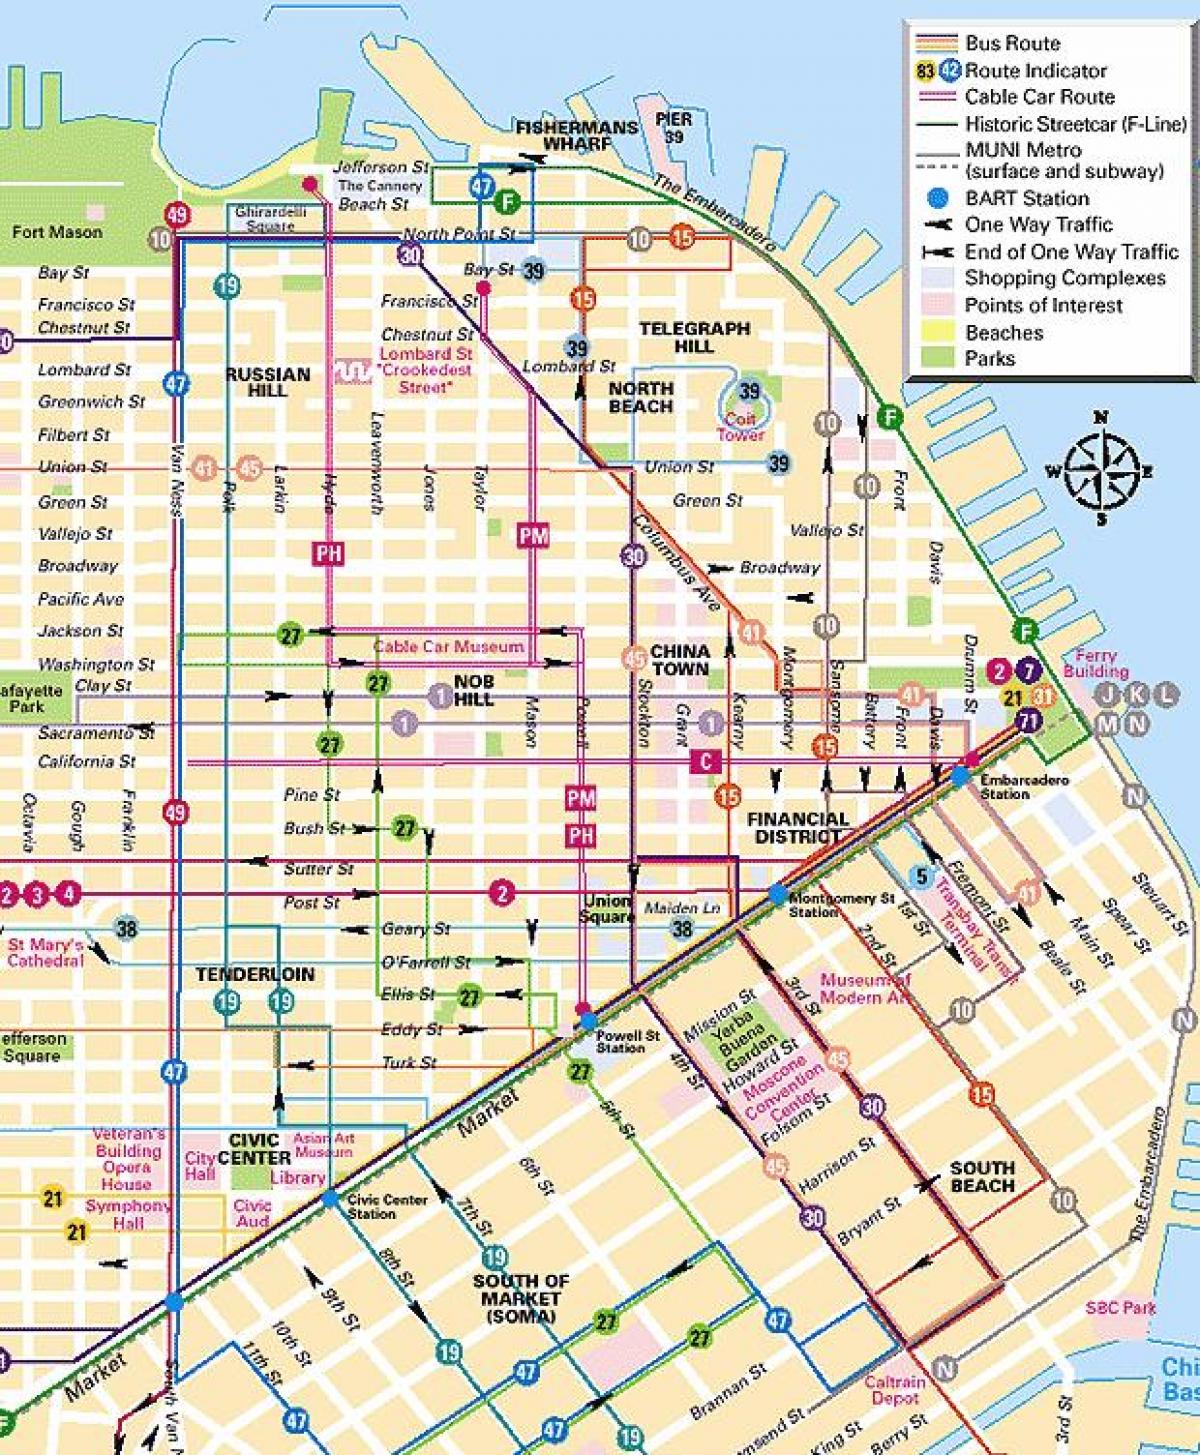 केबल कार लाइनों सैन फ्रांसिस्को नक्शा